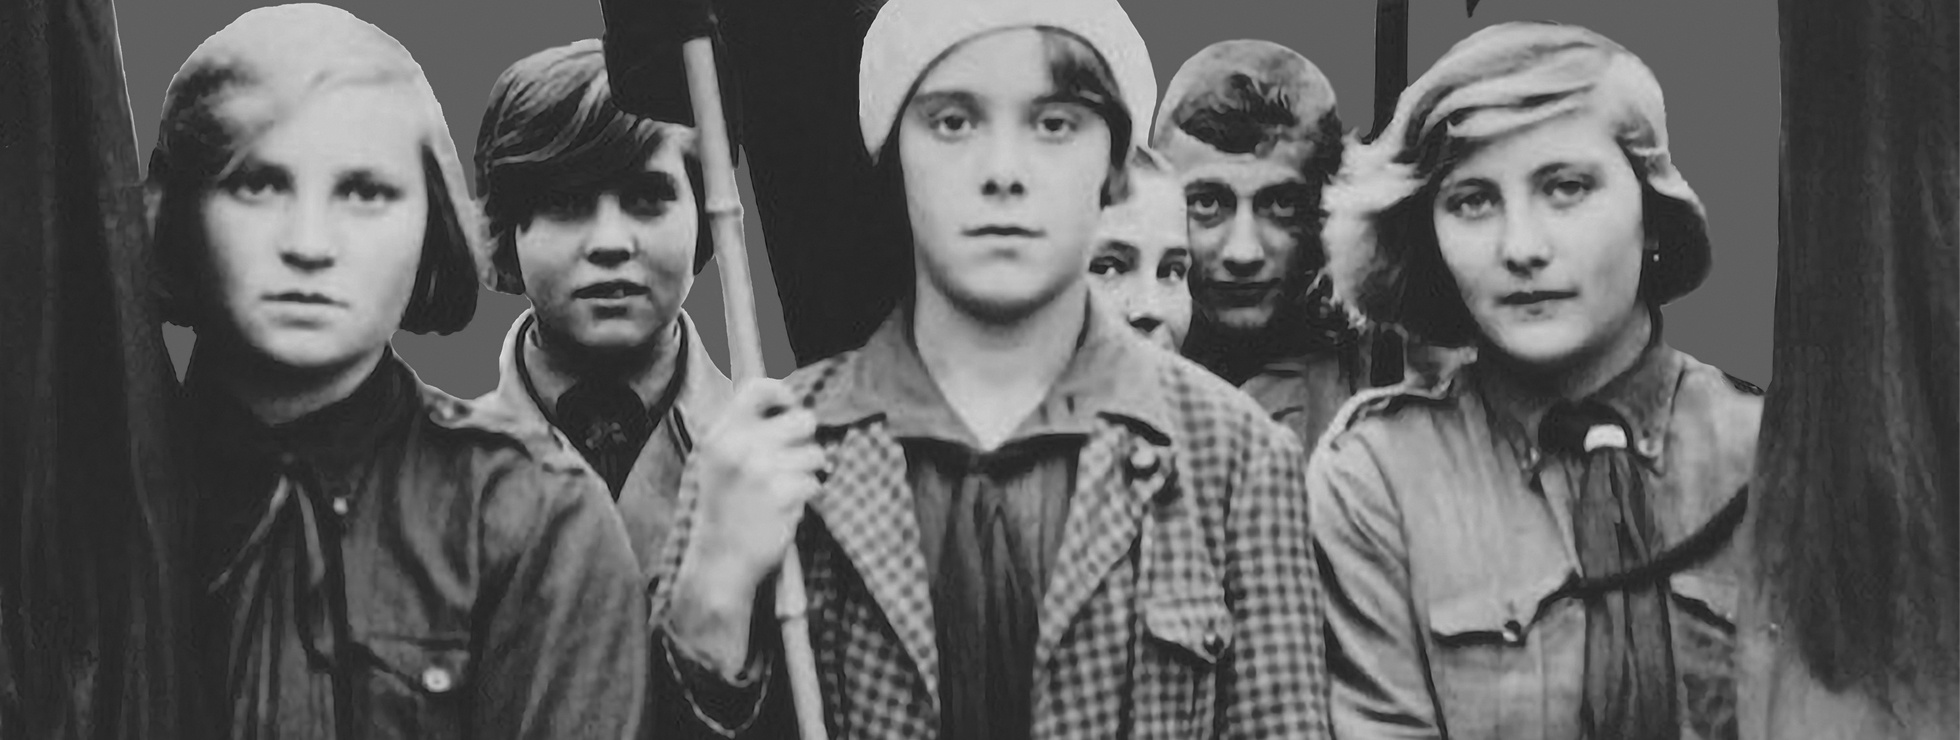 Jugendliche mit Fahnen in der Hand, die in die Kamera schauen © VGA